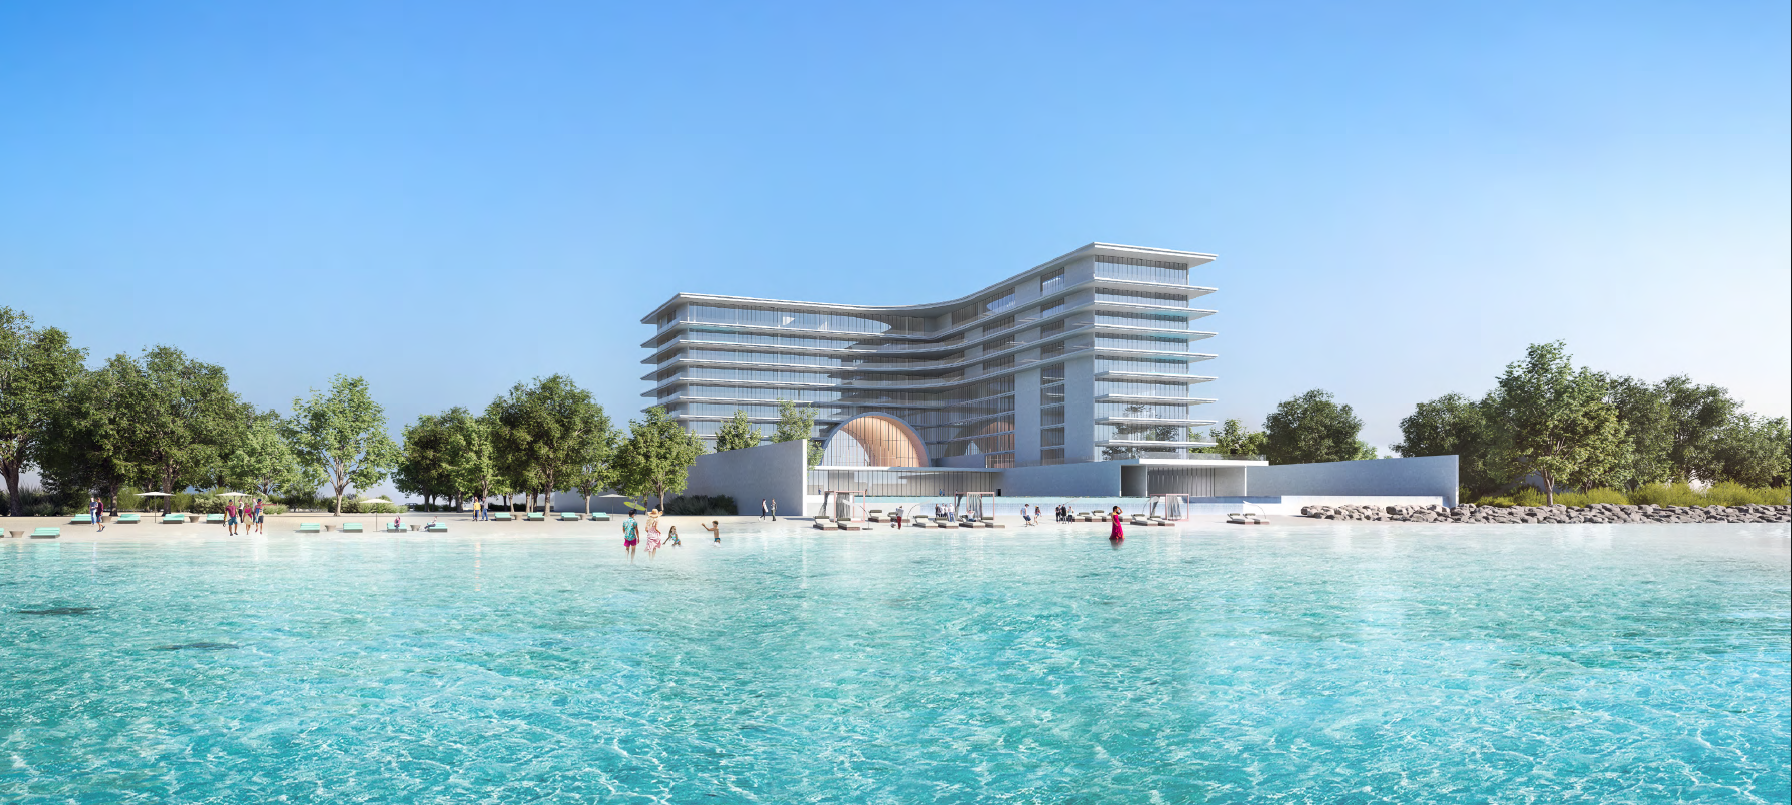 Armani Beach Residences in Palm Jumeirah.